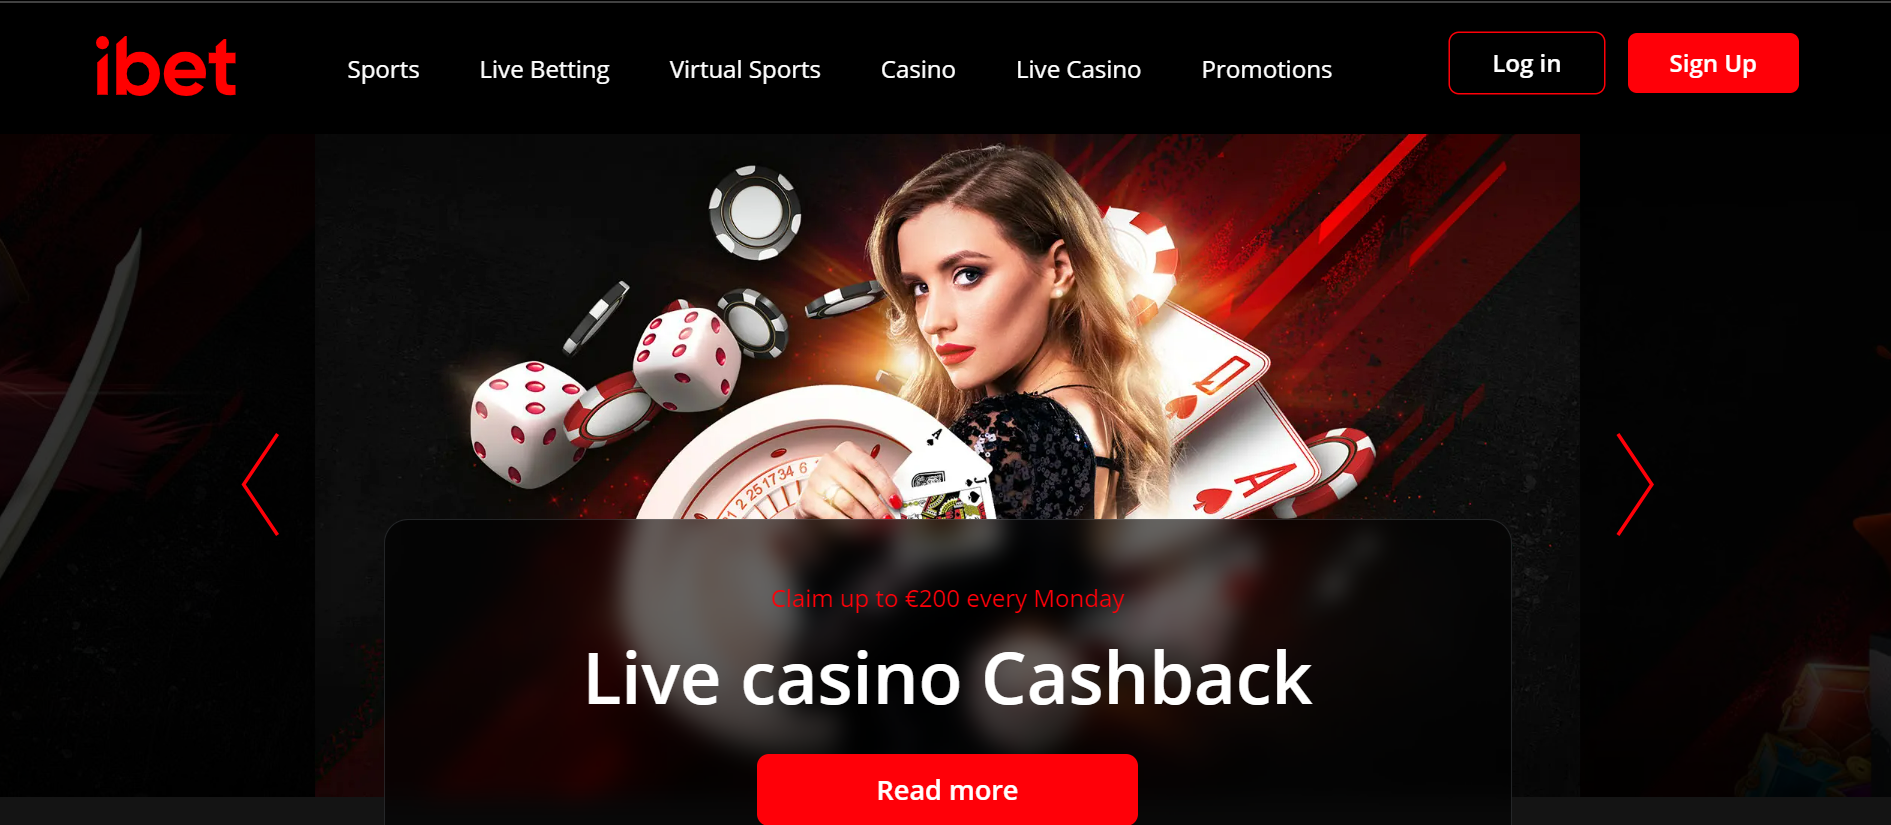 ibet casino review for Canada by bestbonuslist.com